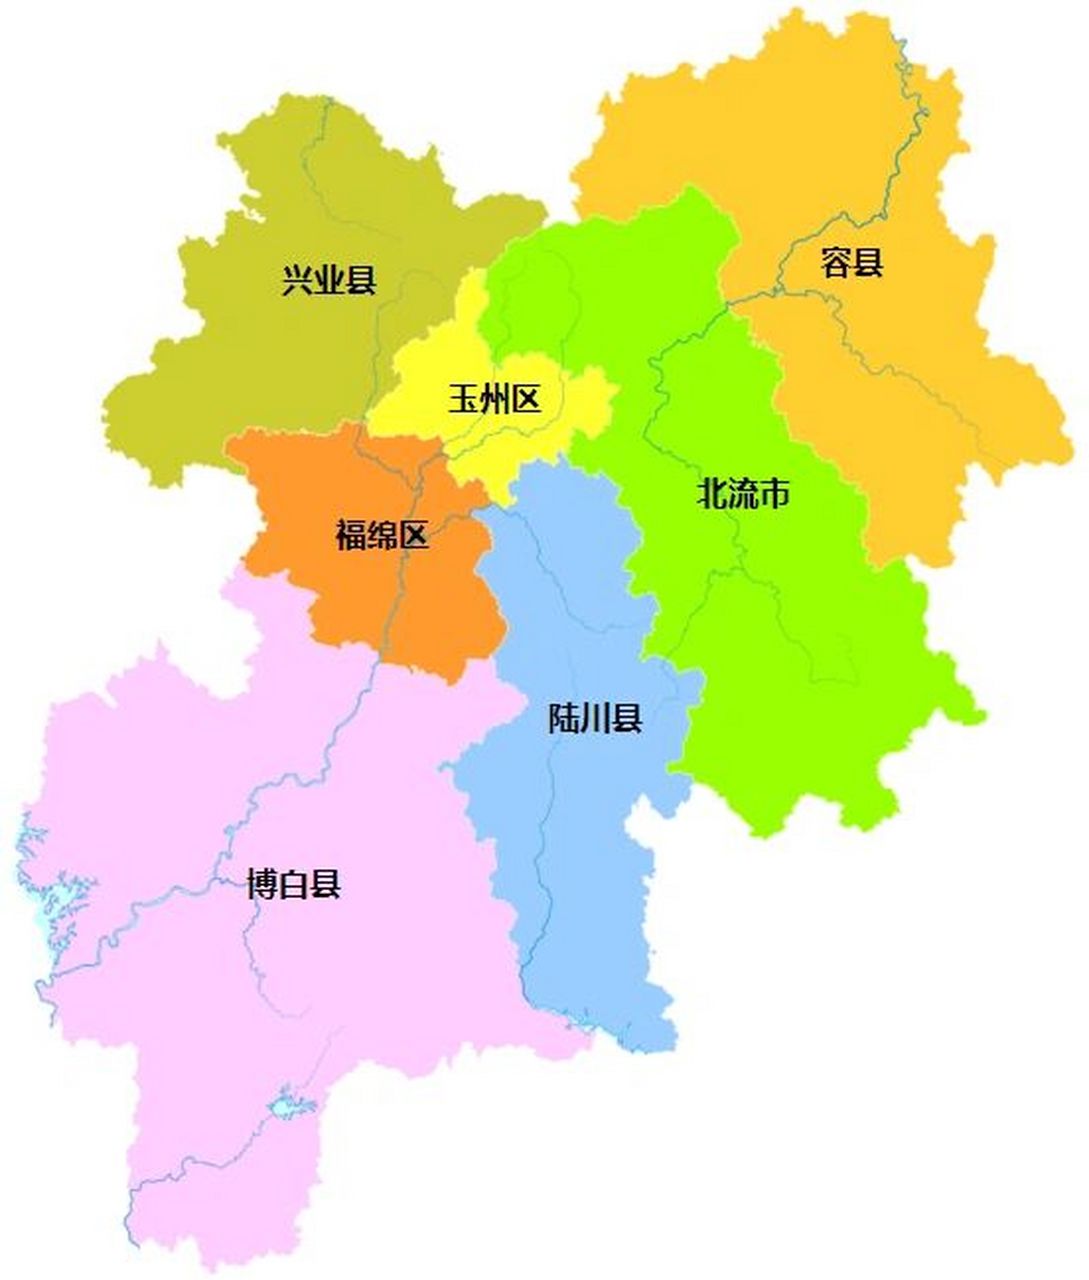 玉林全市划分为 2个区:玉州区,福绵区; 4个县:容县,陆川县,博白县